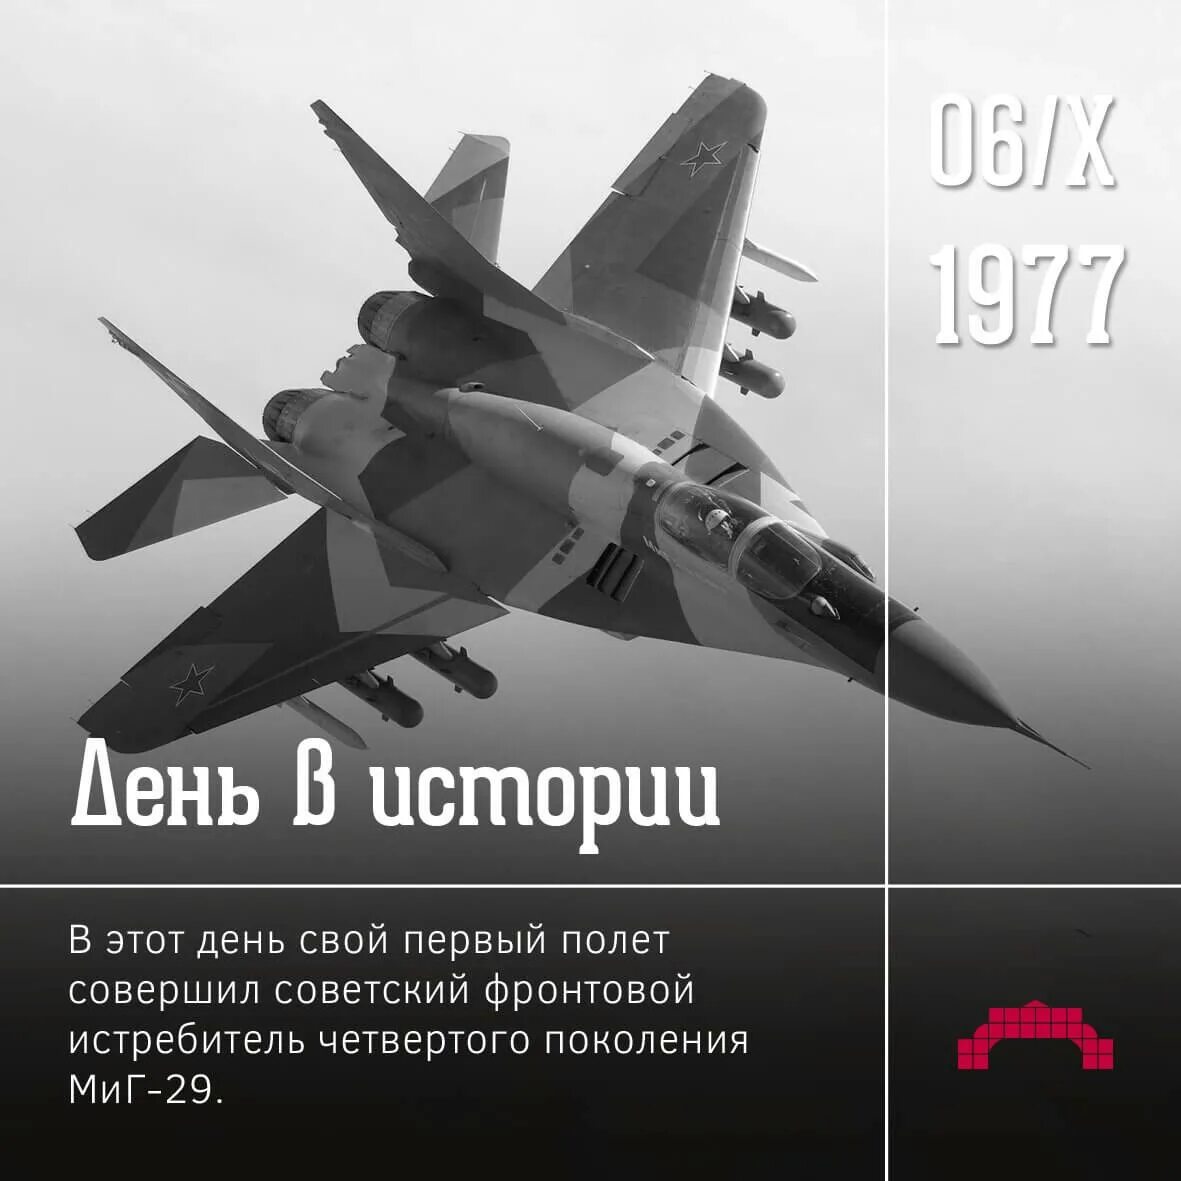 6 Октября 1977 года состоялся первый полет истребителя миг-29. 1977 — Первый полёт советского истребителя четвёртого поколения Су-27.. Миг 29 1977. Многоцелевой истребитель четвертого поколения. Даты 6 октября